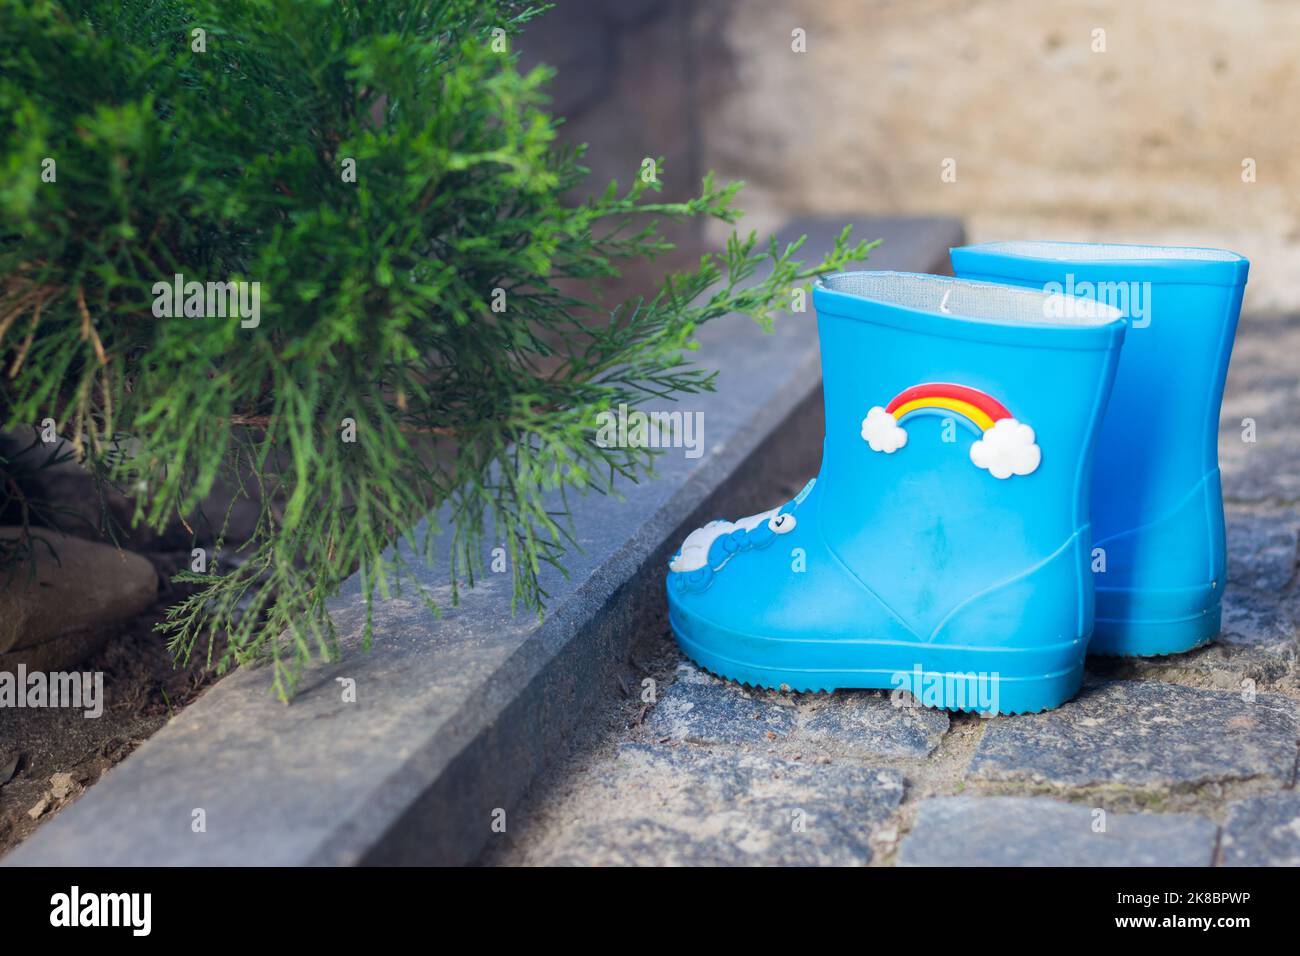 Kinder Gummistiefel im Garten. Niedliche blaue Regenstiefel mit Regenbogendeko. Herbstschuhe. Stiefel für raine Wetter. Kinderschutzkleidung. Stockfoto